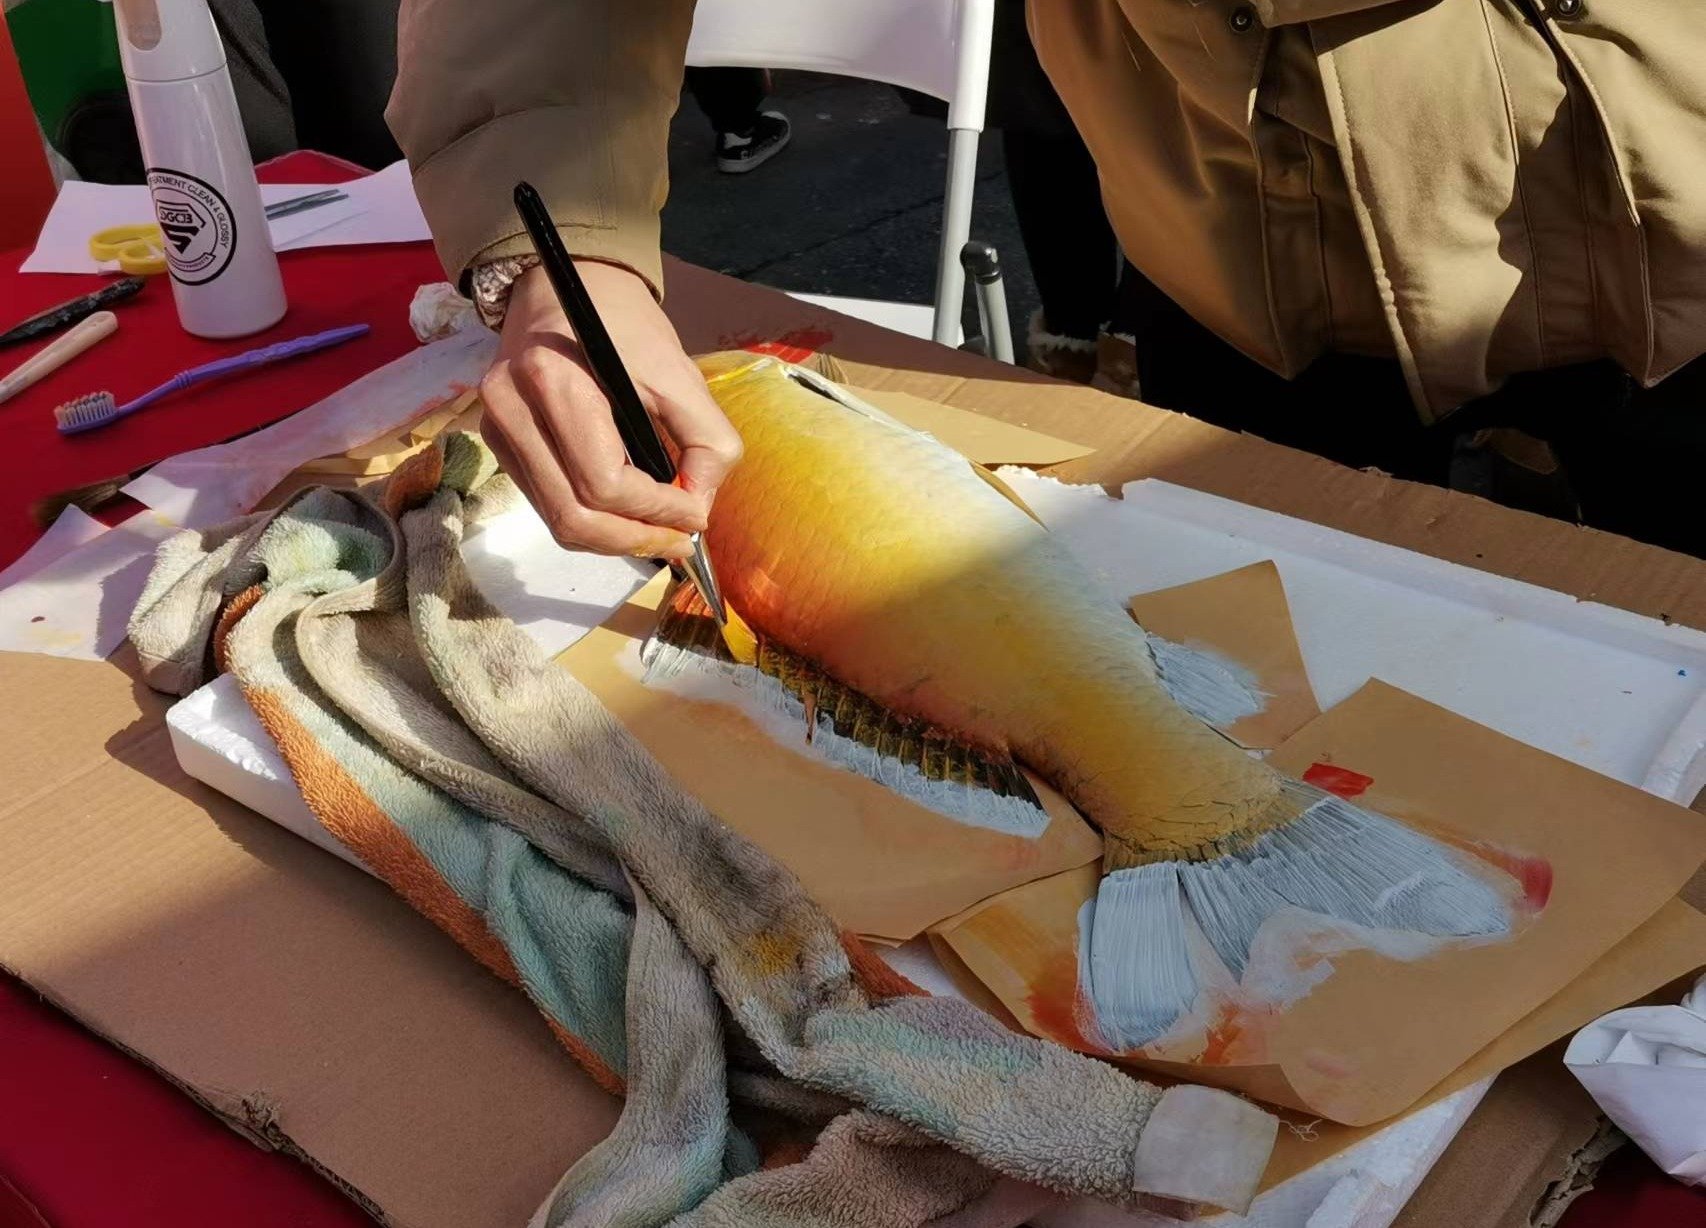 鱼拓，又称“鱼模”，是一种将鱼的形象用墨汁或颜料拓印到纸上的技法和艺术